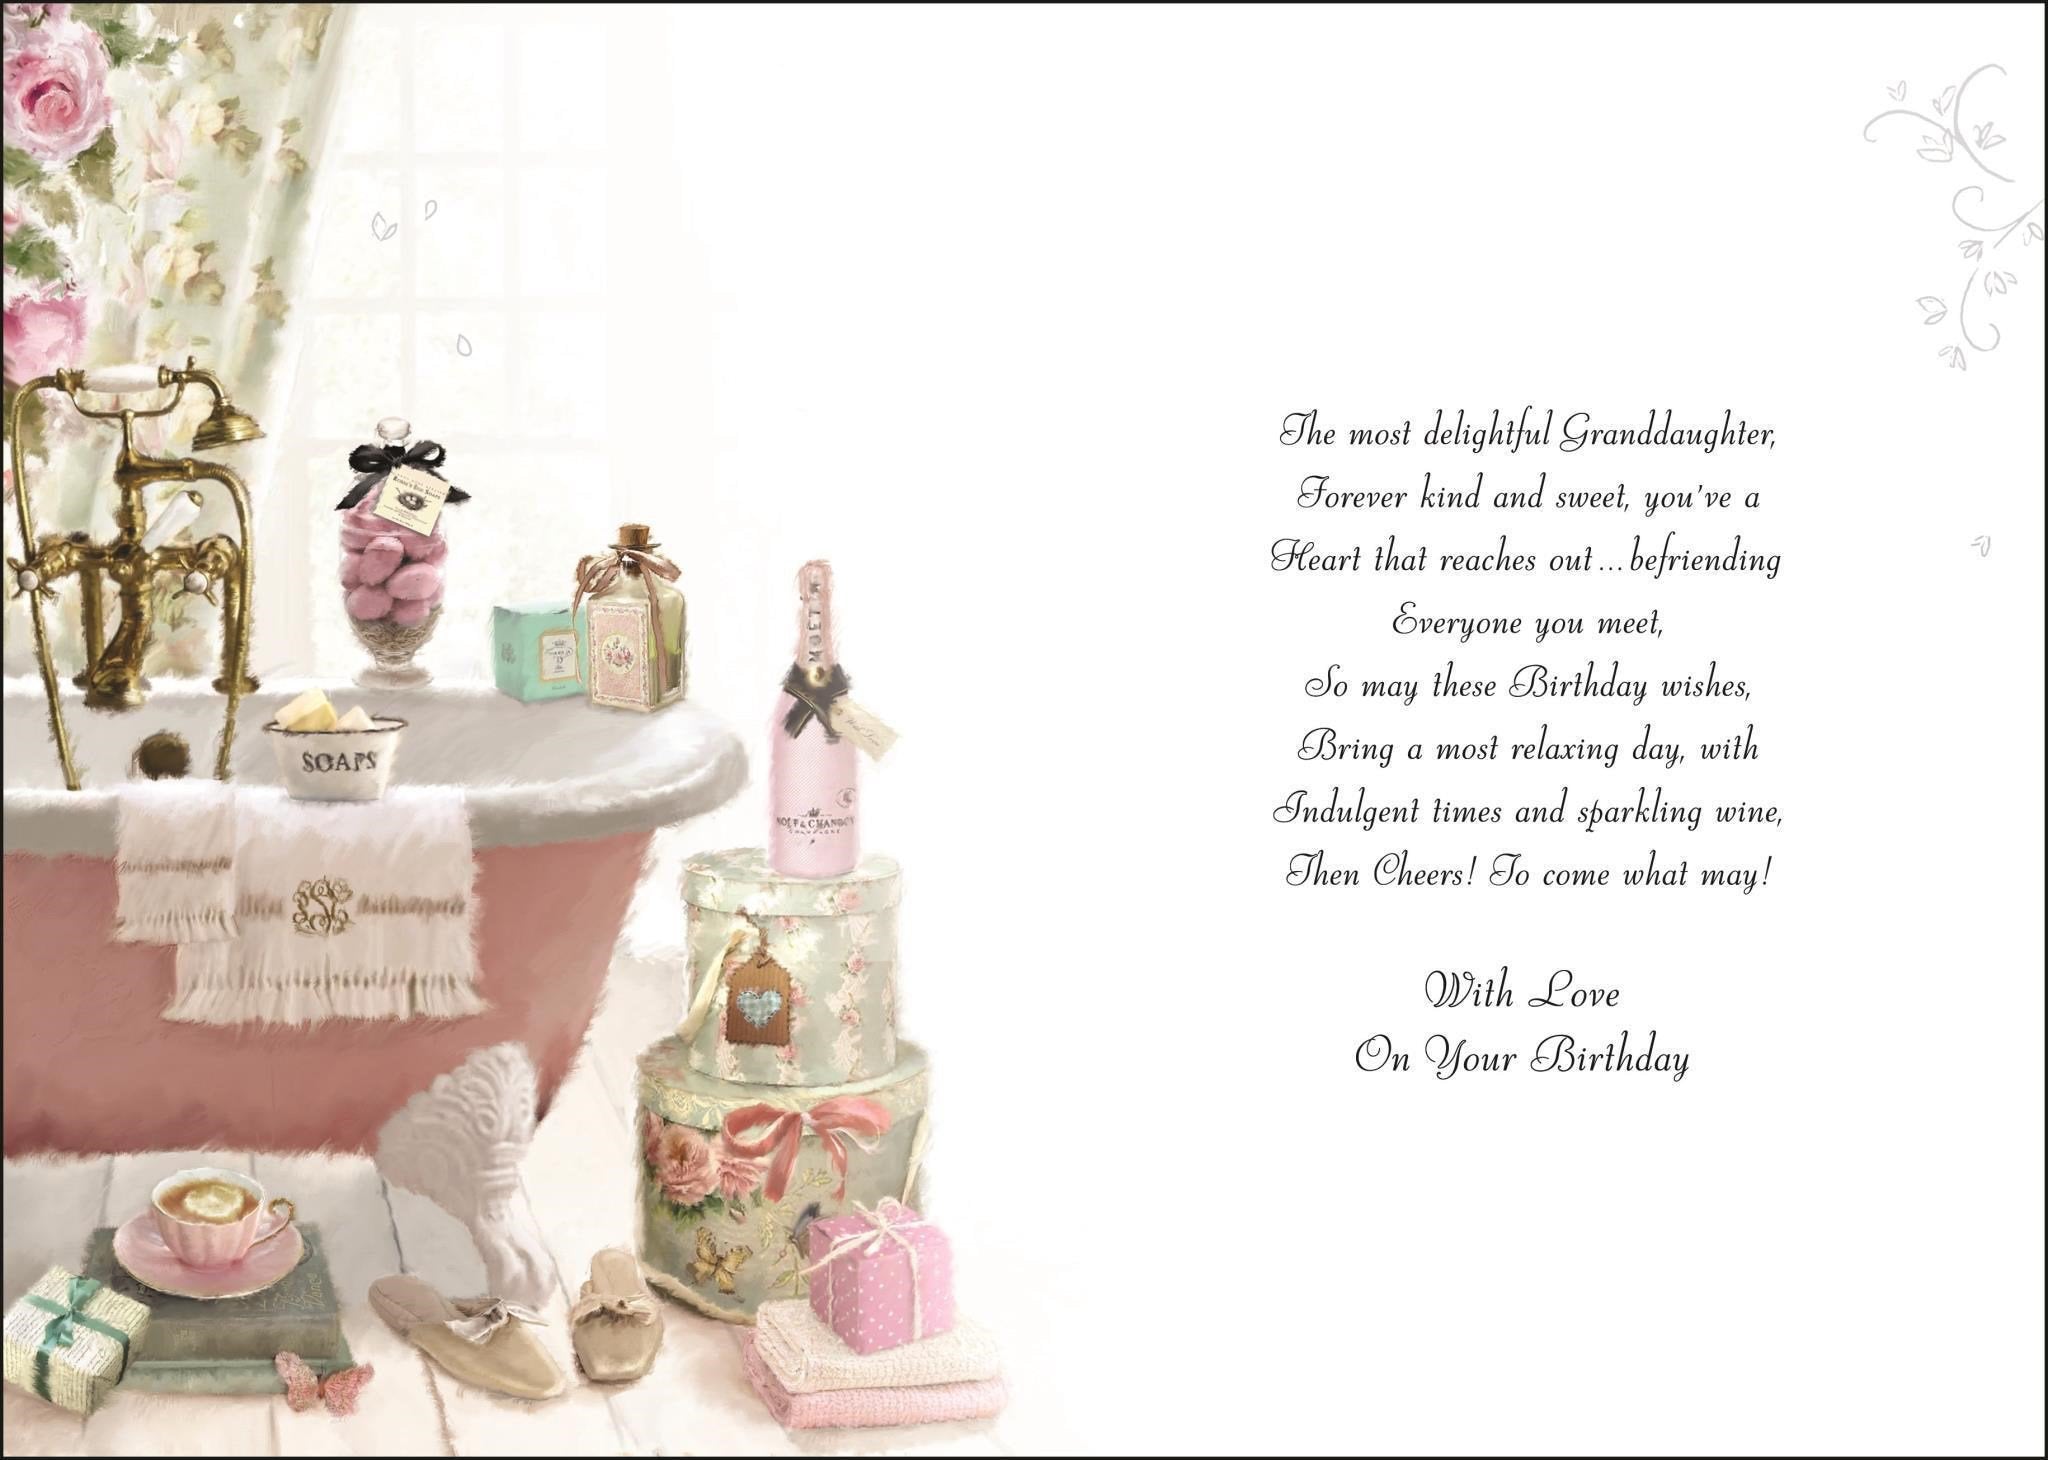 Inside of Granddaughter Bathroom Birthday Greetings Card